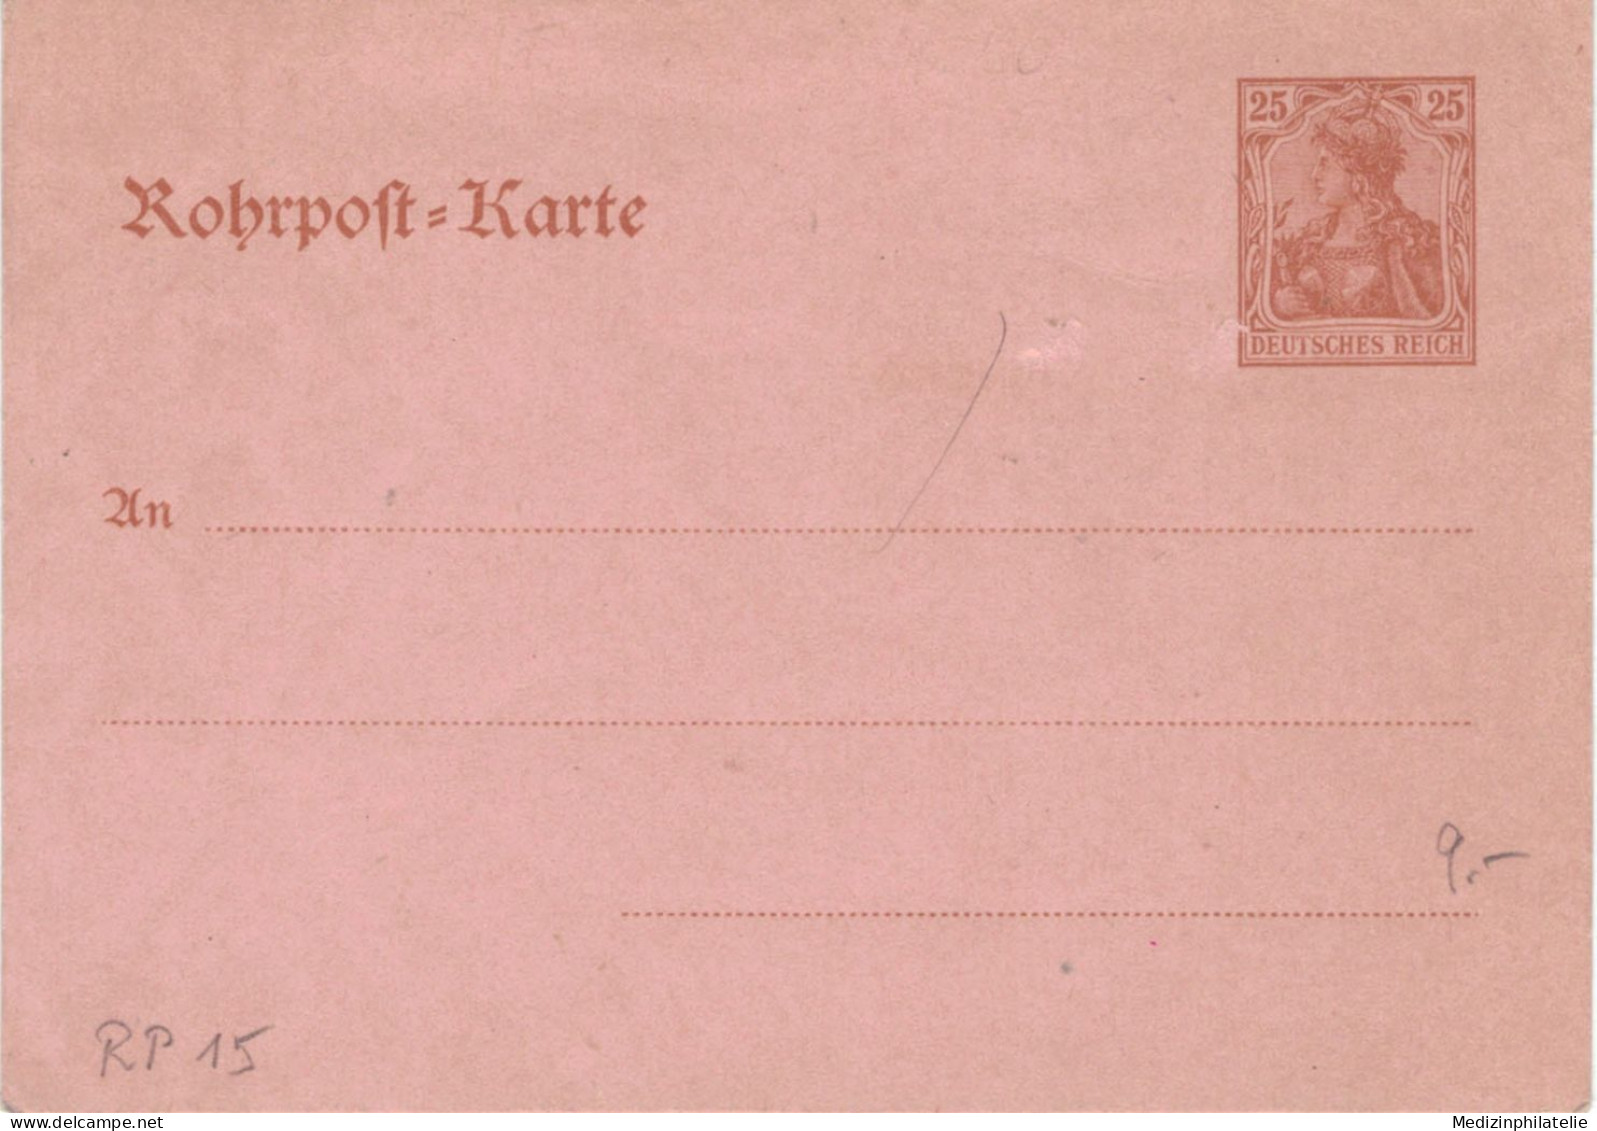 Rohrpost-Karte 25 Pf. Germania - Ungebraucht - 15 - Postkarten